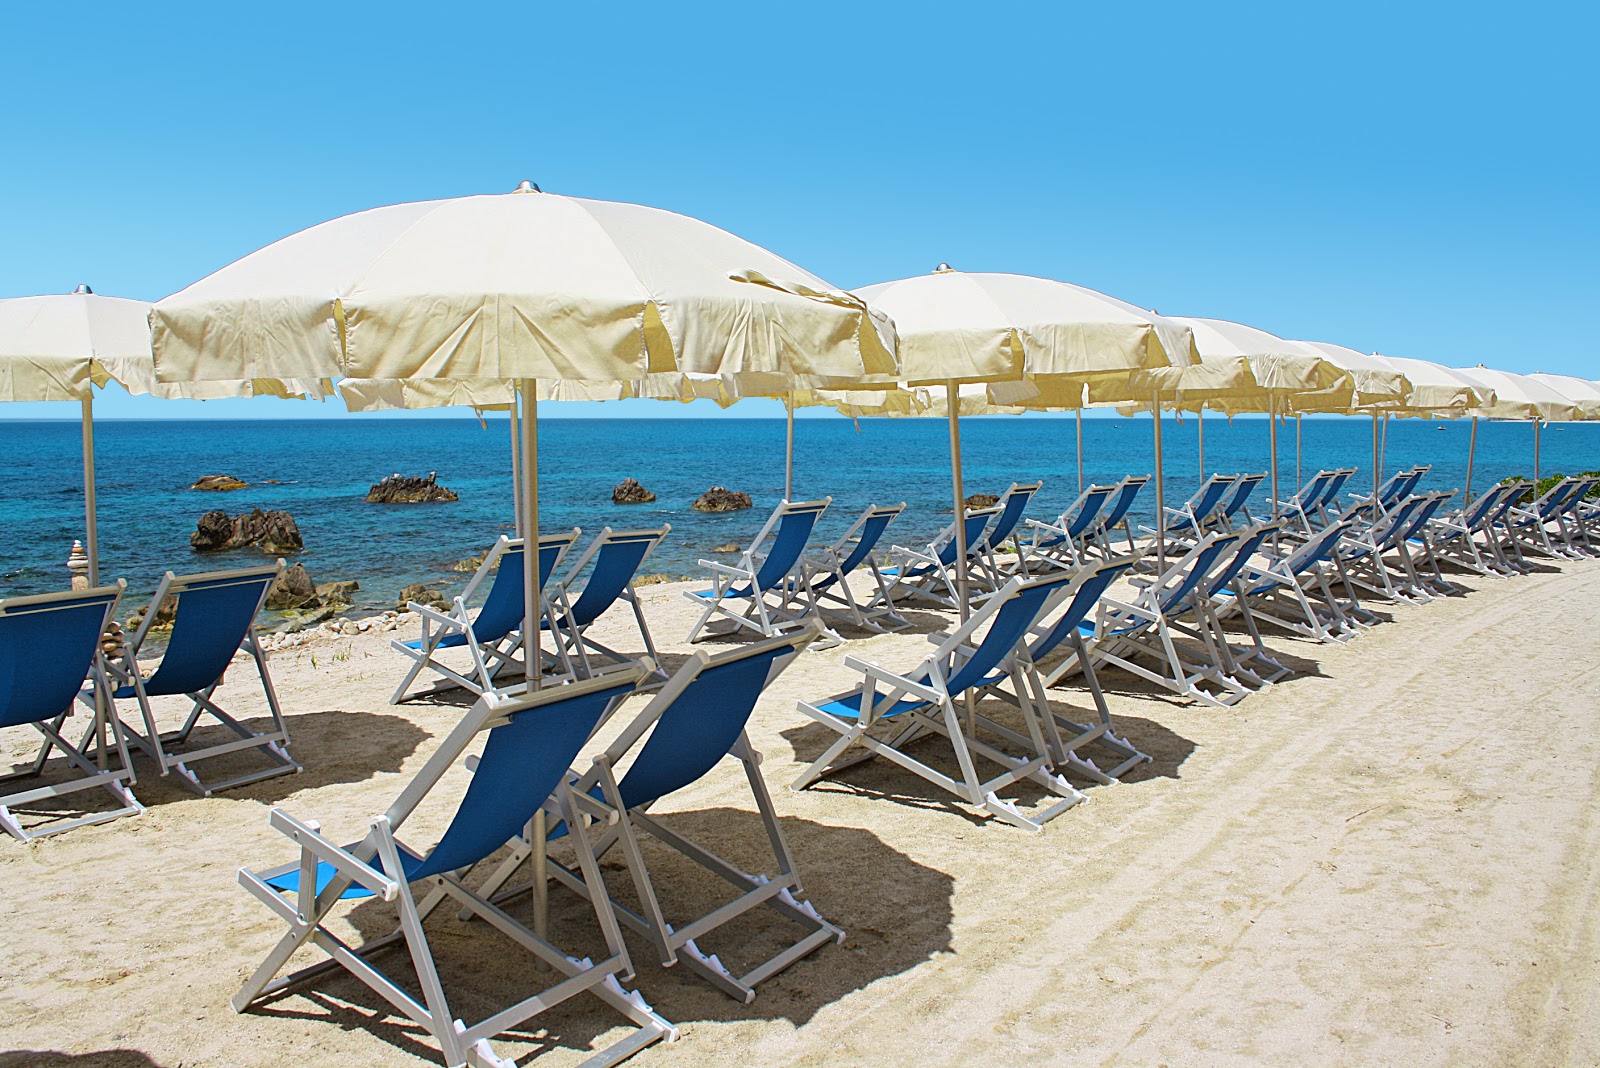 Spiaggia Michelino II'in fotoğrafı doğal alan içinde bulunmaktadır